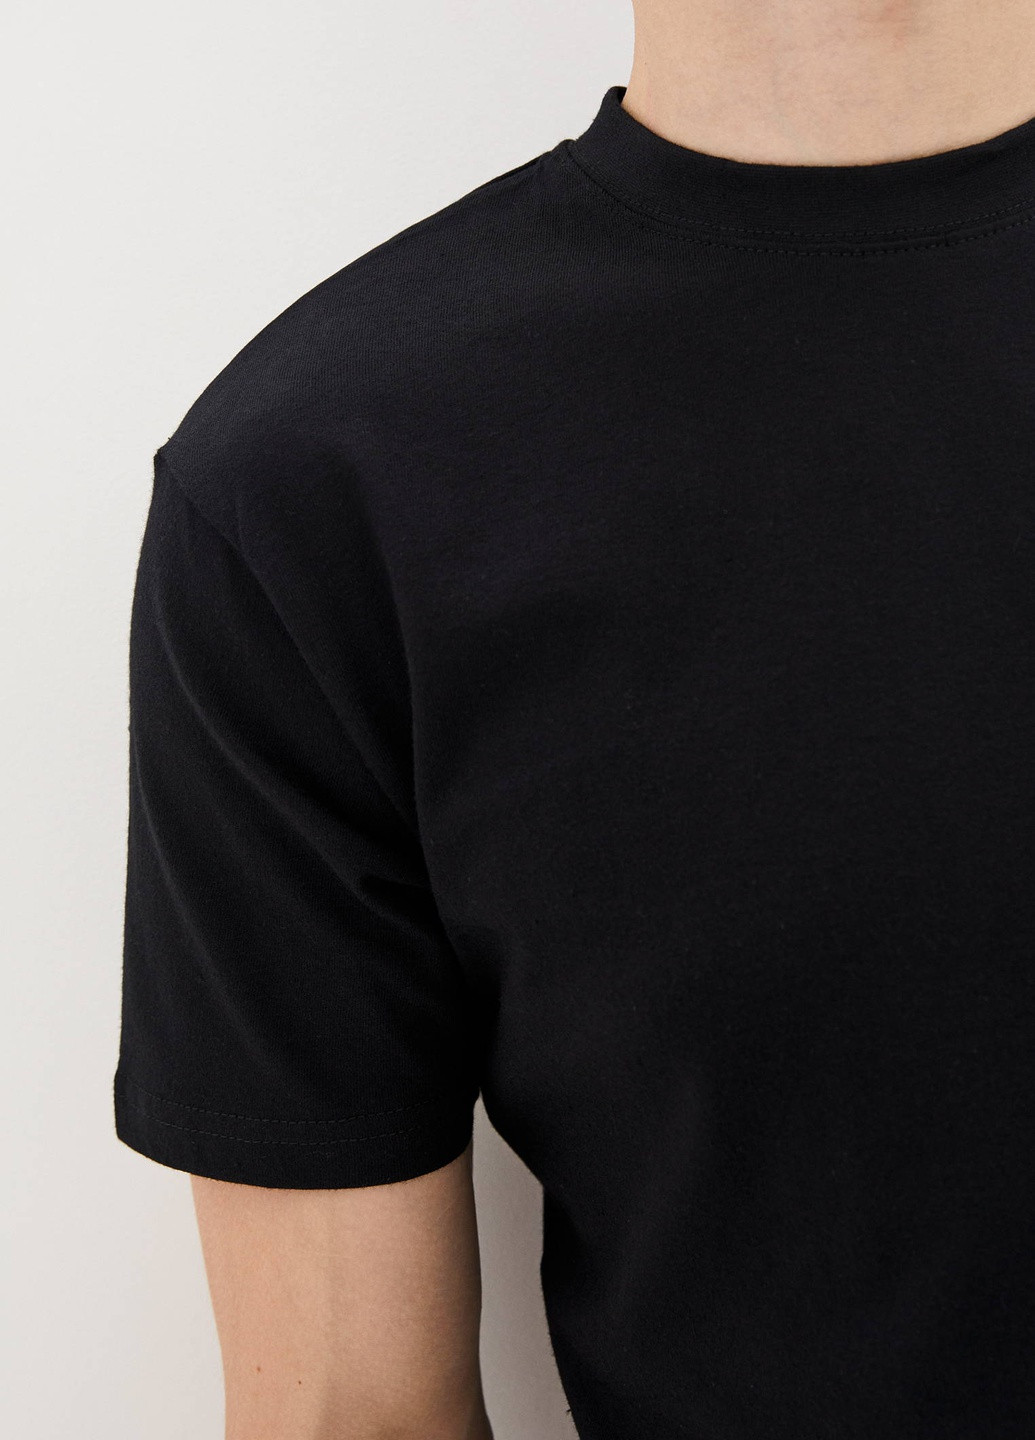 Черная летняя футболка мужская базовая с коротким рукавом Роза